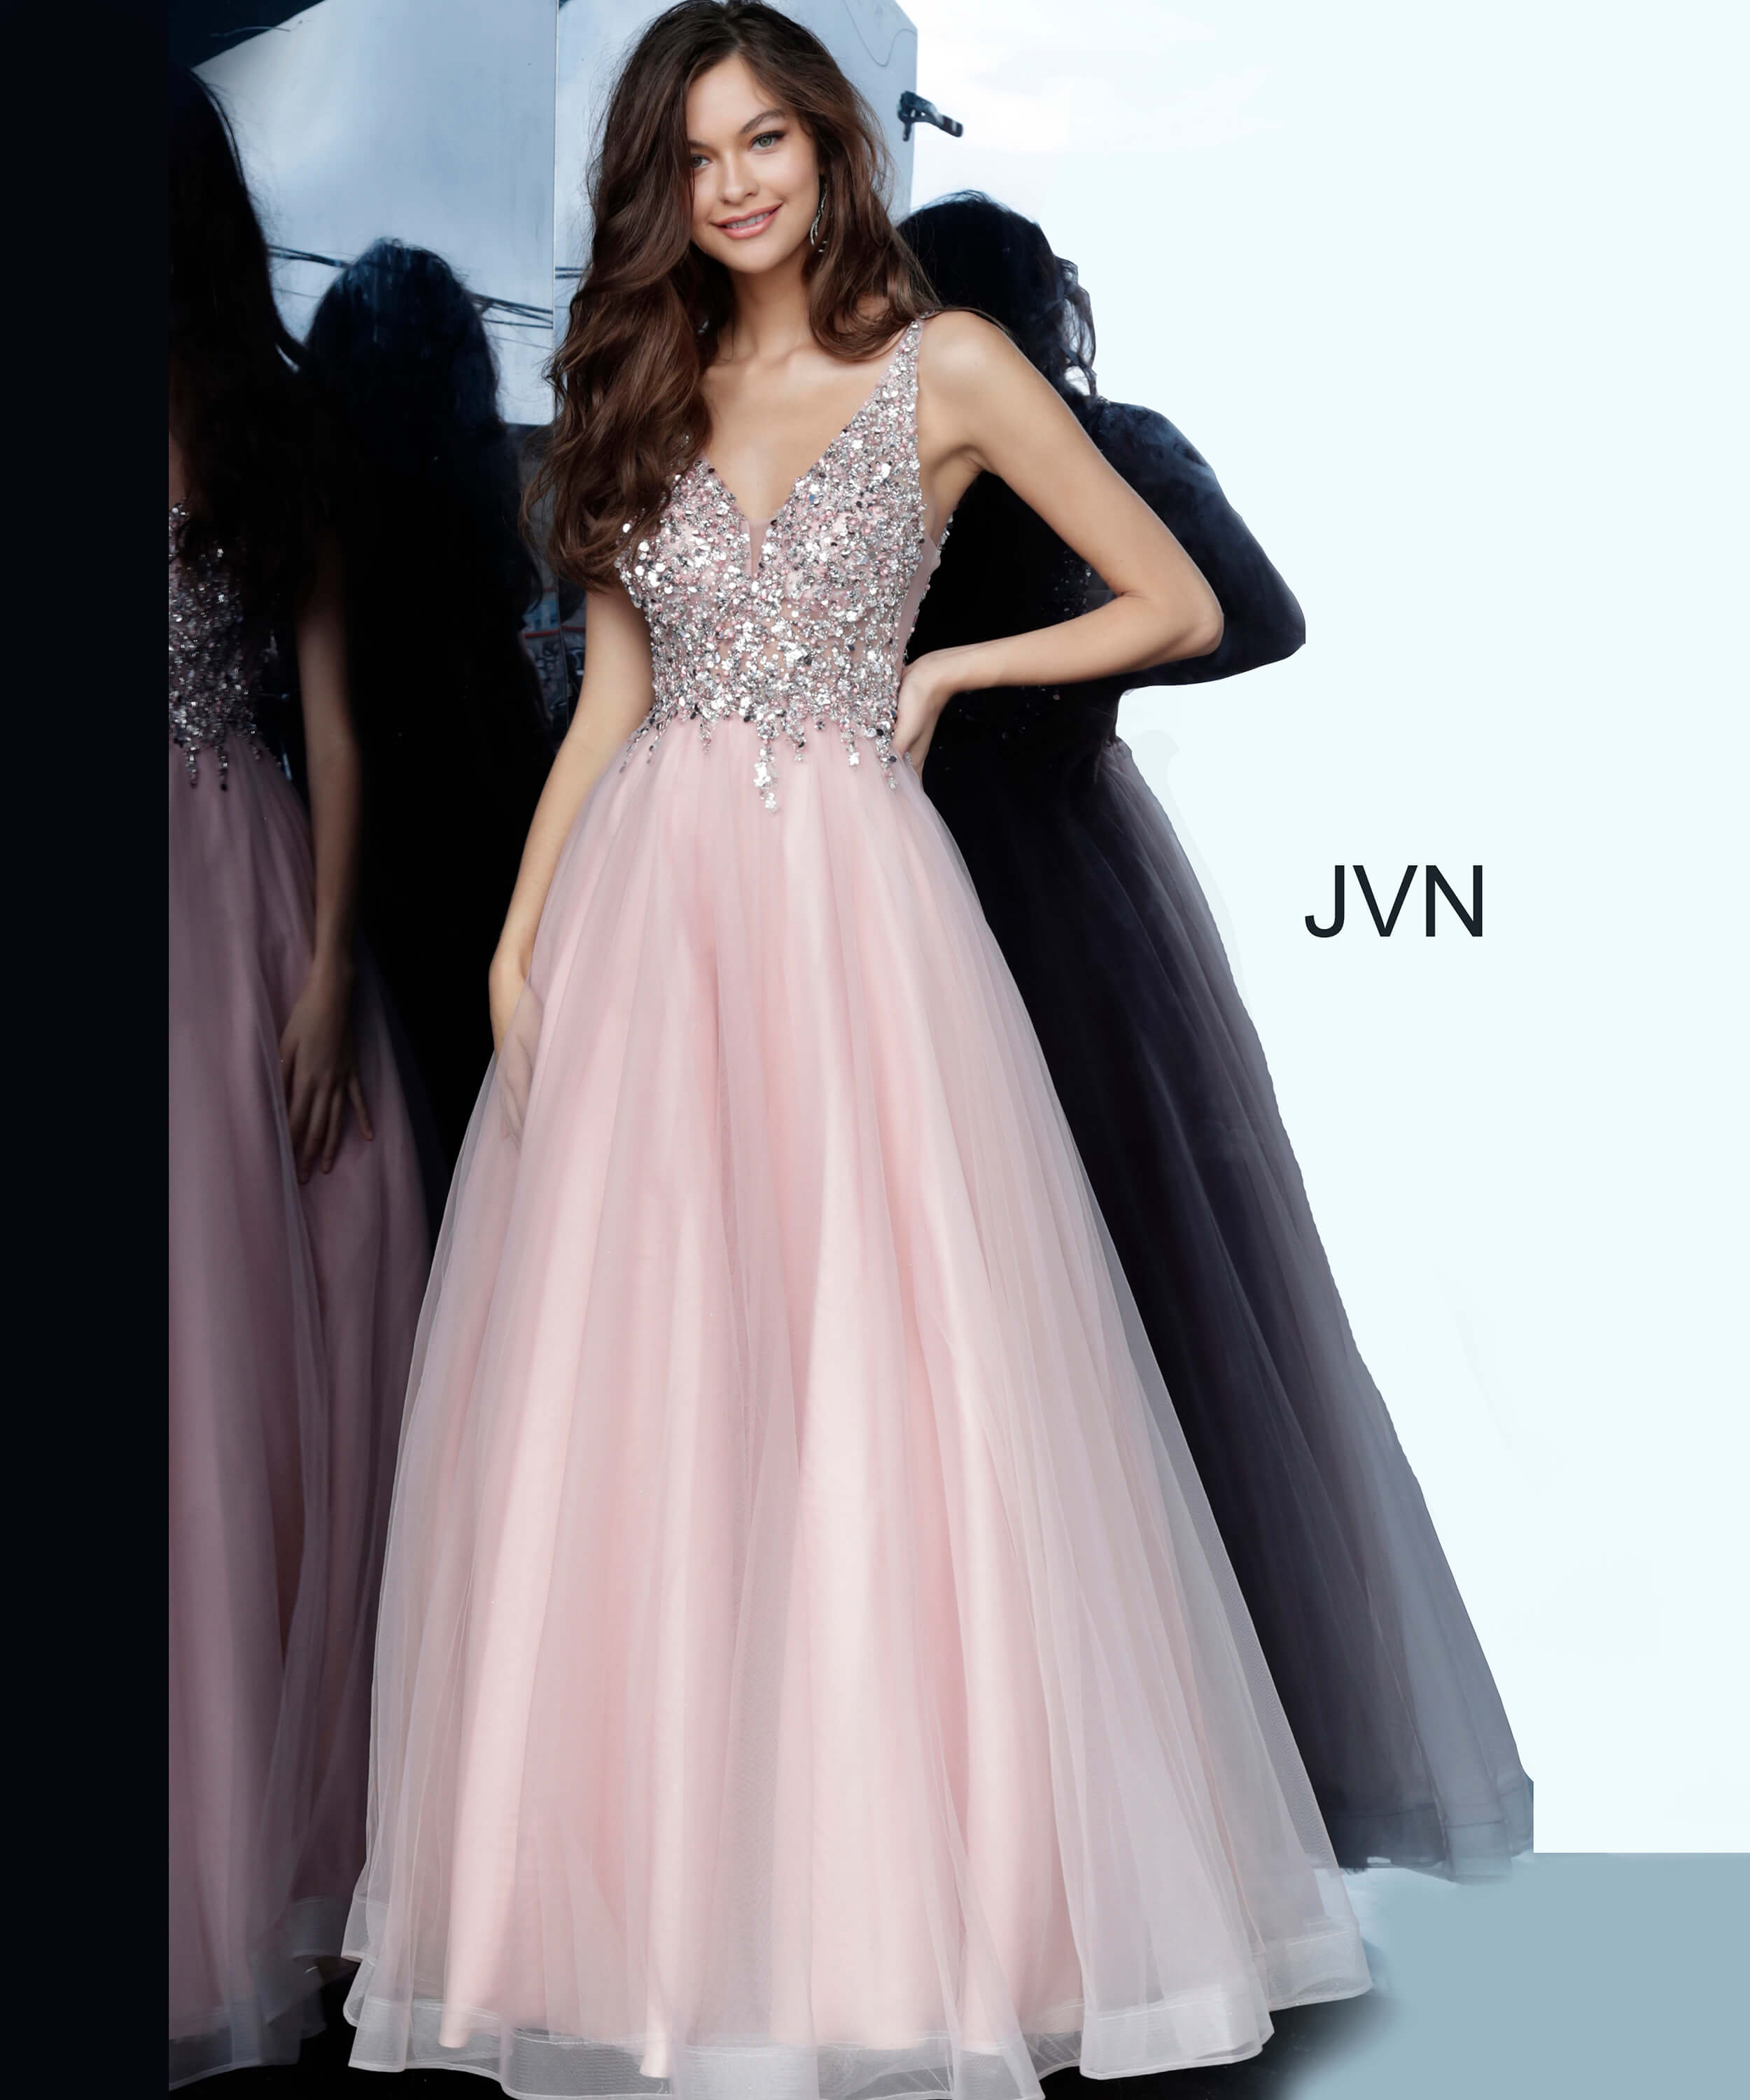 JVN2007 Dress | JVN Blush Beaded Bodice V Neck Ballgown